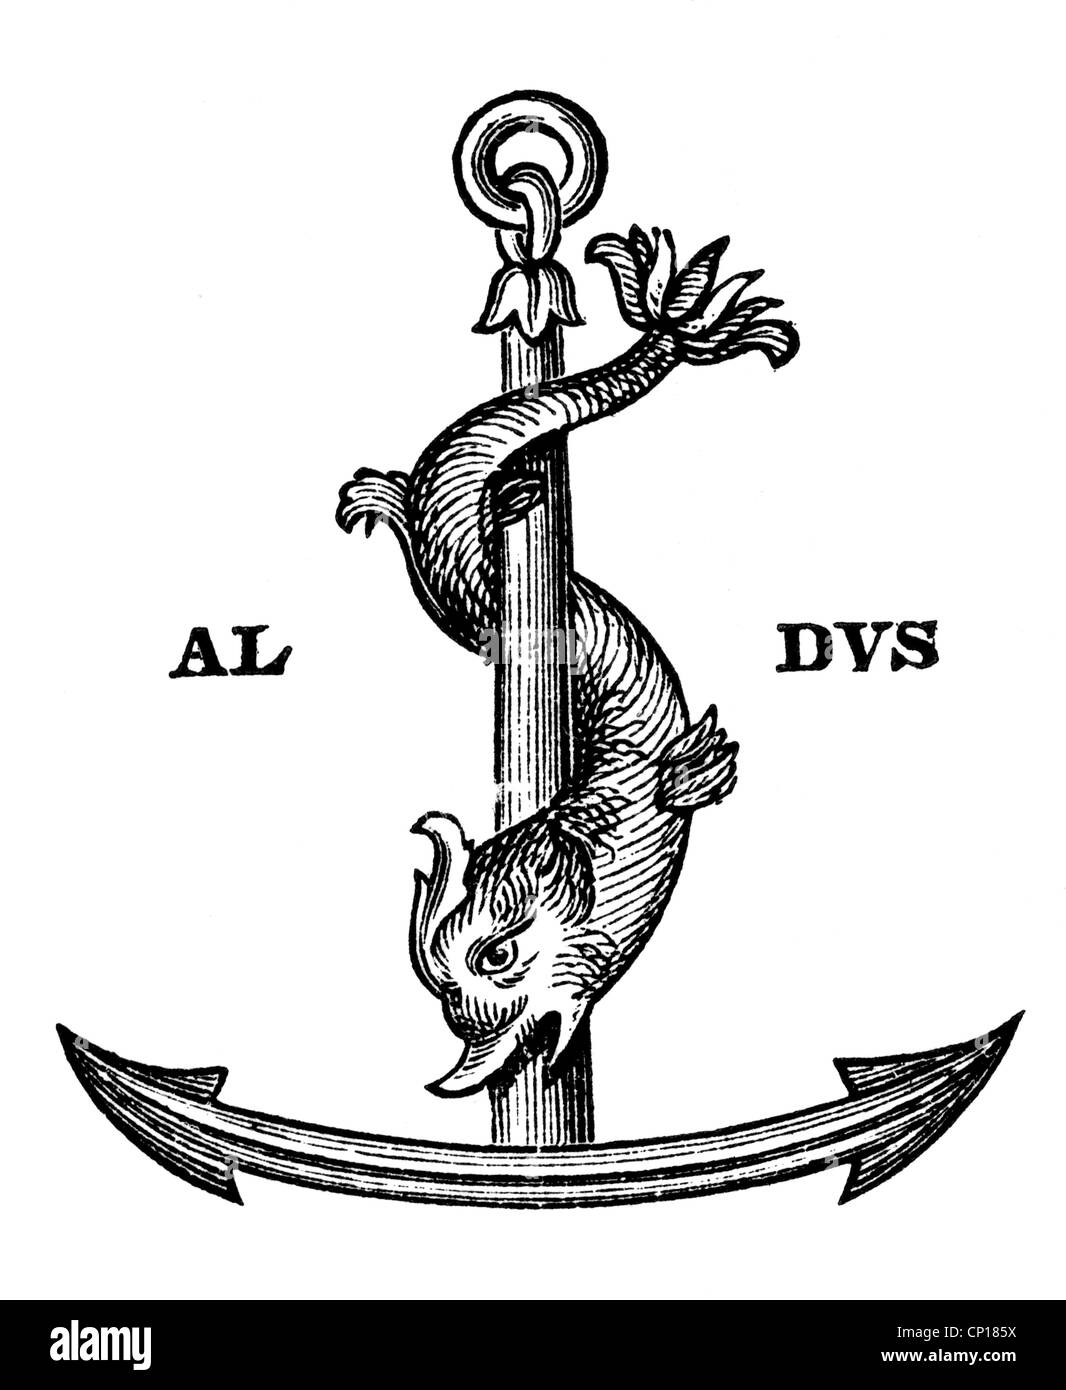 Manuzio, Aldus The Elder, 1449 - 6.2.1515, stampante veneziana, il suo marchio, simbolo, logo, eraldry, Venezia, serpente di mare, serpenti di mare, ancora, ancore, impronta, segno, , Foto Stock